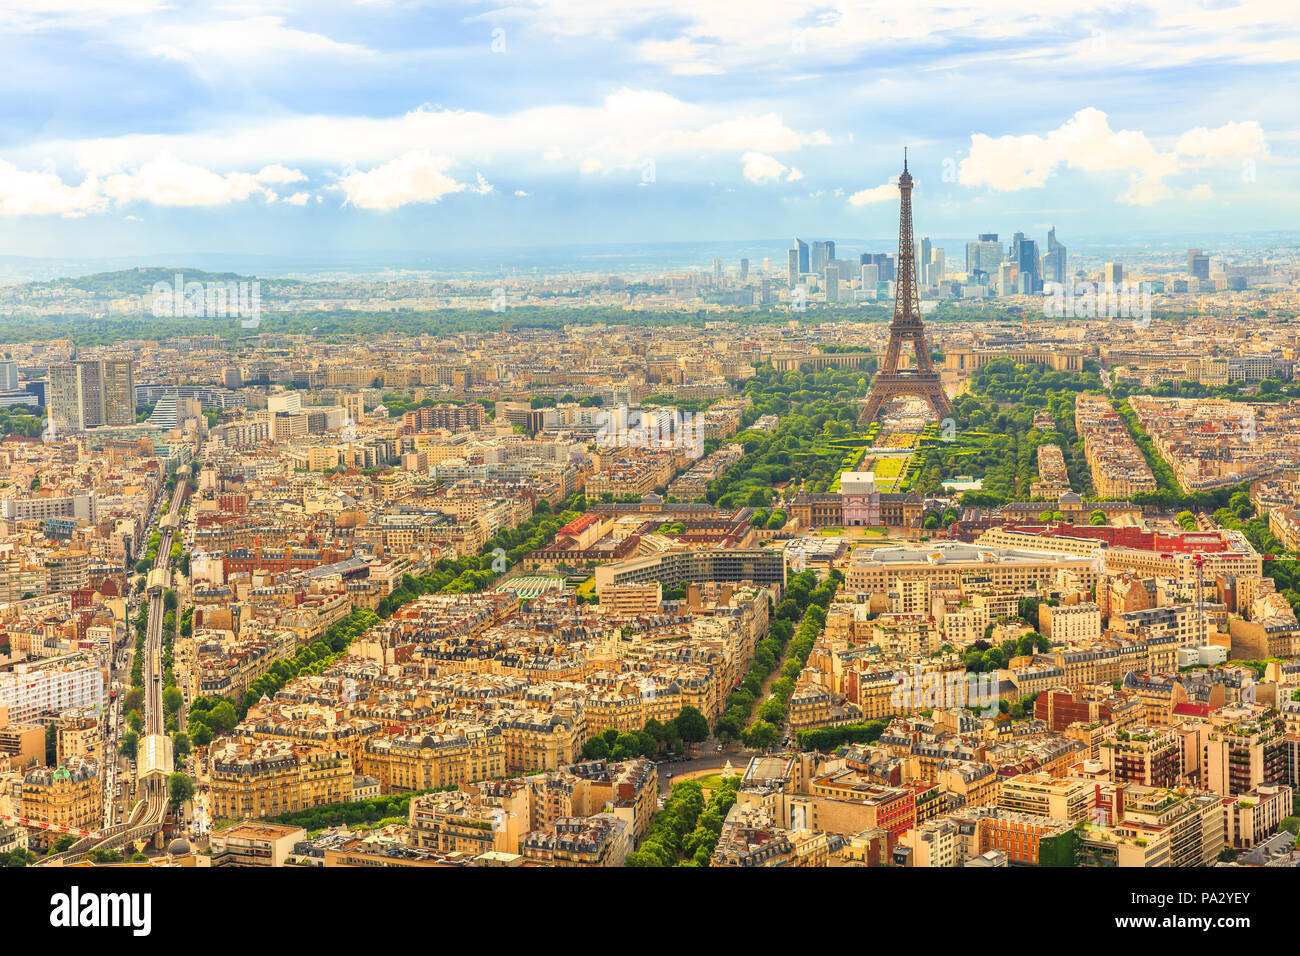 Vue aérienne de la Tour Eiffel et M6 passage ligne de chemin de fer à Paris métro Sèvres-lecourbe avec de l'Observatoire de la Tour Montparnasse. Toits de Paris et la ville, la France, l'Europe. Banque D'Images